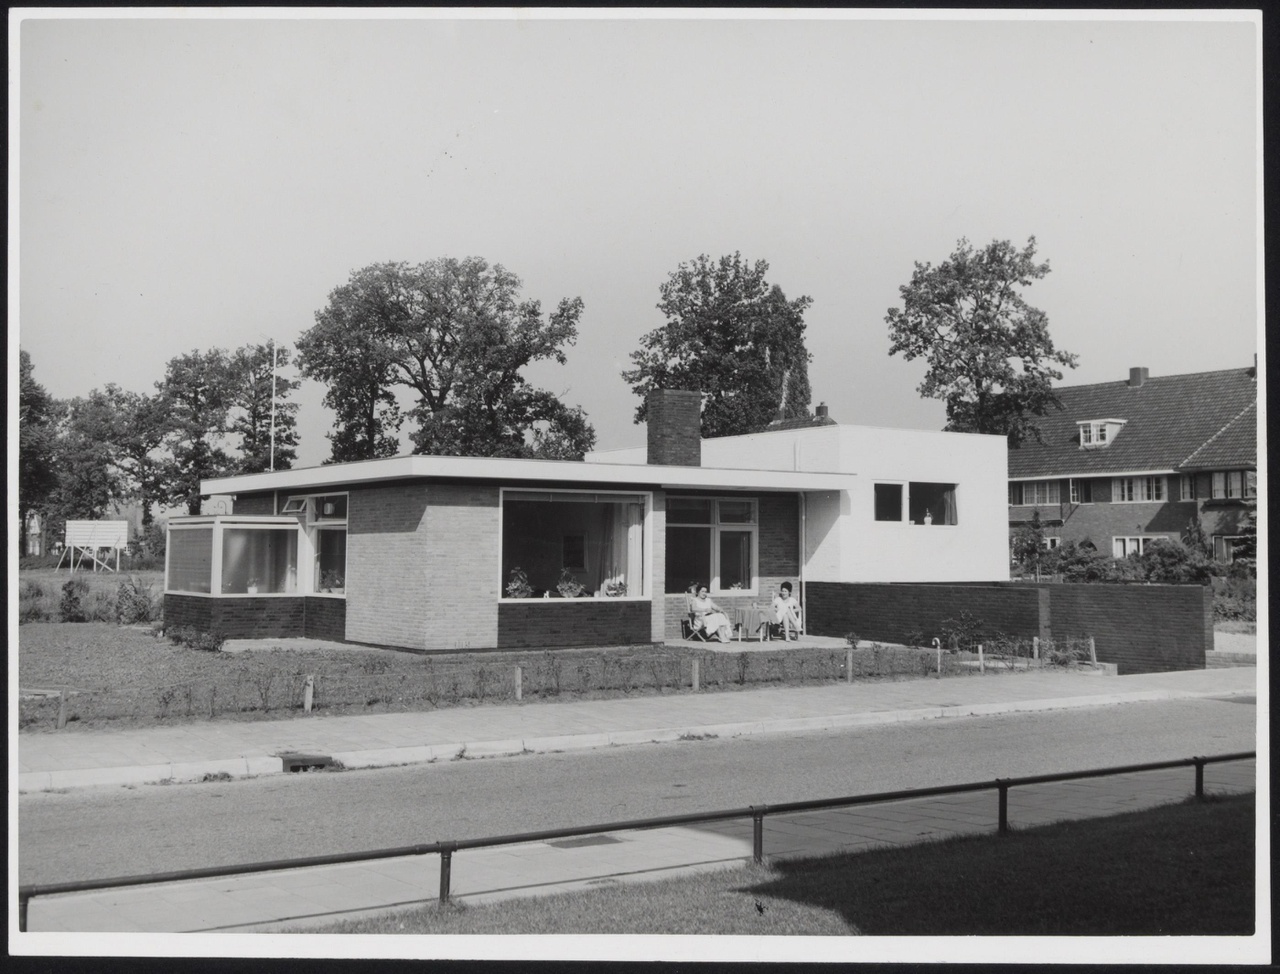 Afbeelding van woning Bolte, ca.1958, vanaf overkant van zijweg